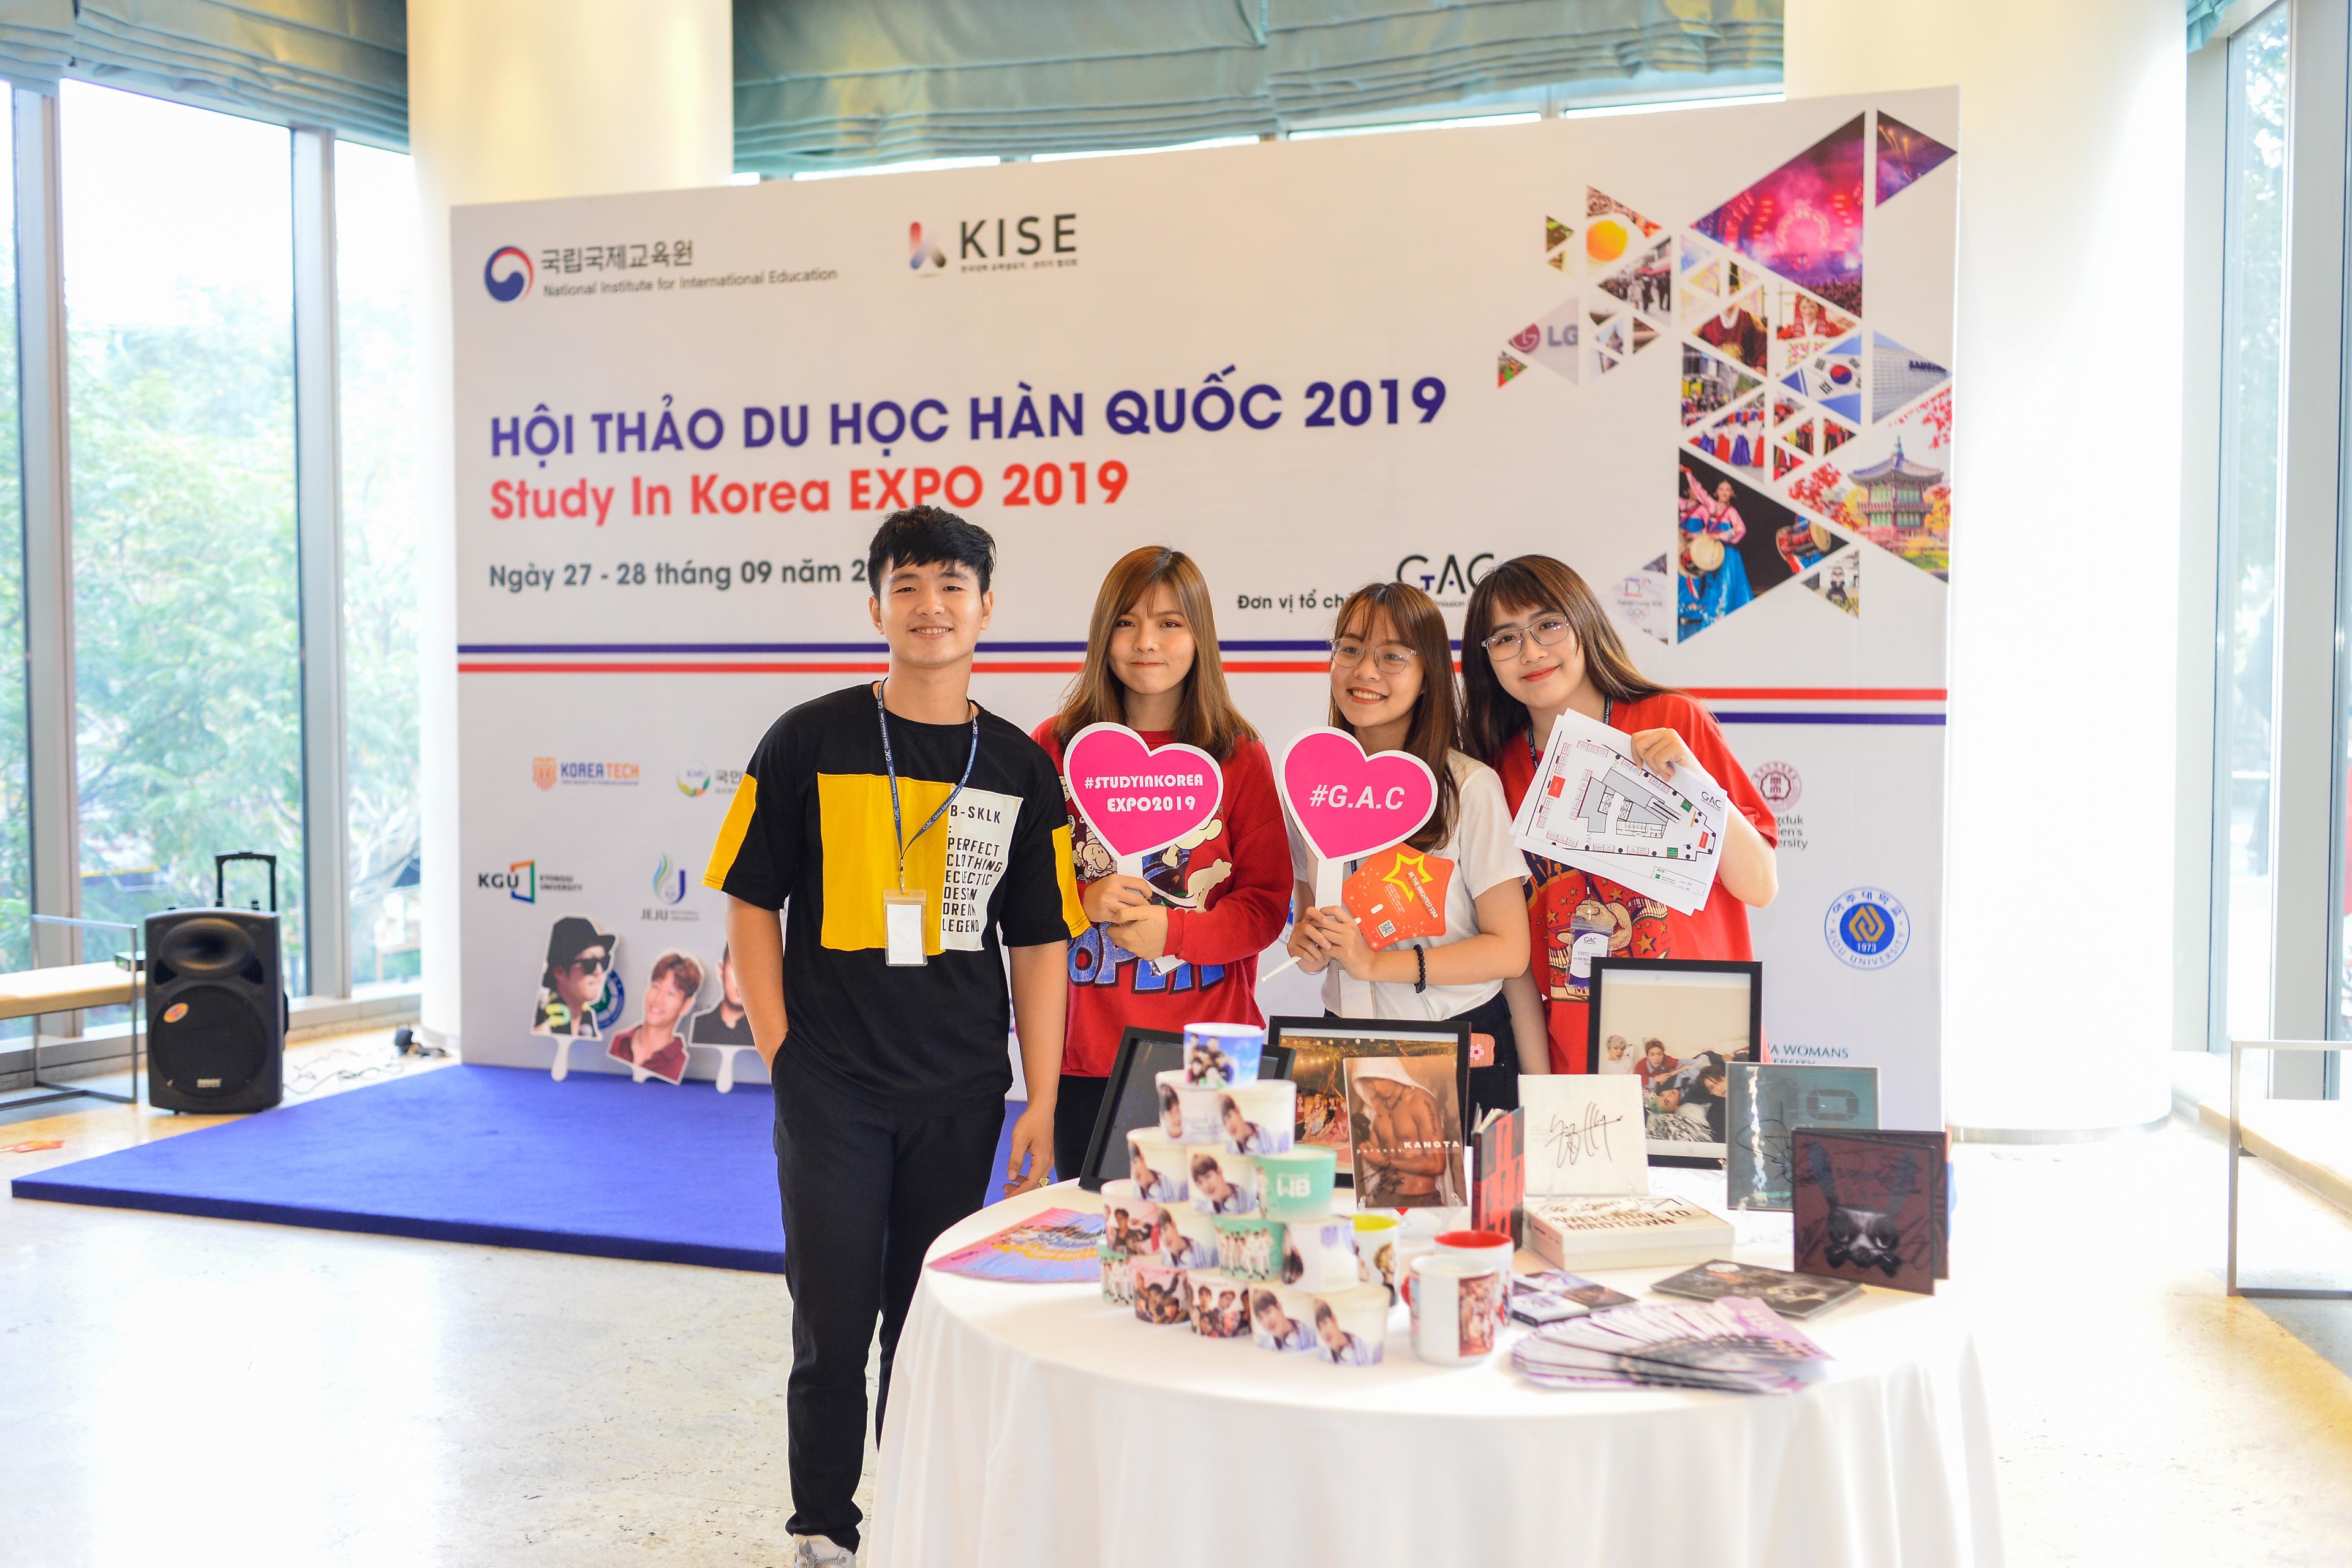 Hội thảo du học Hàn Quốc EXPO 2019